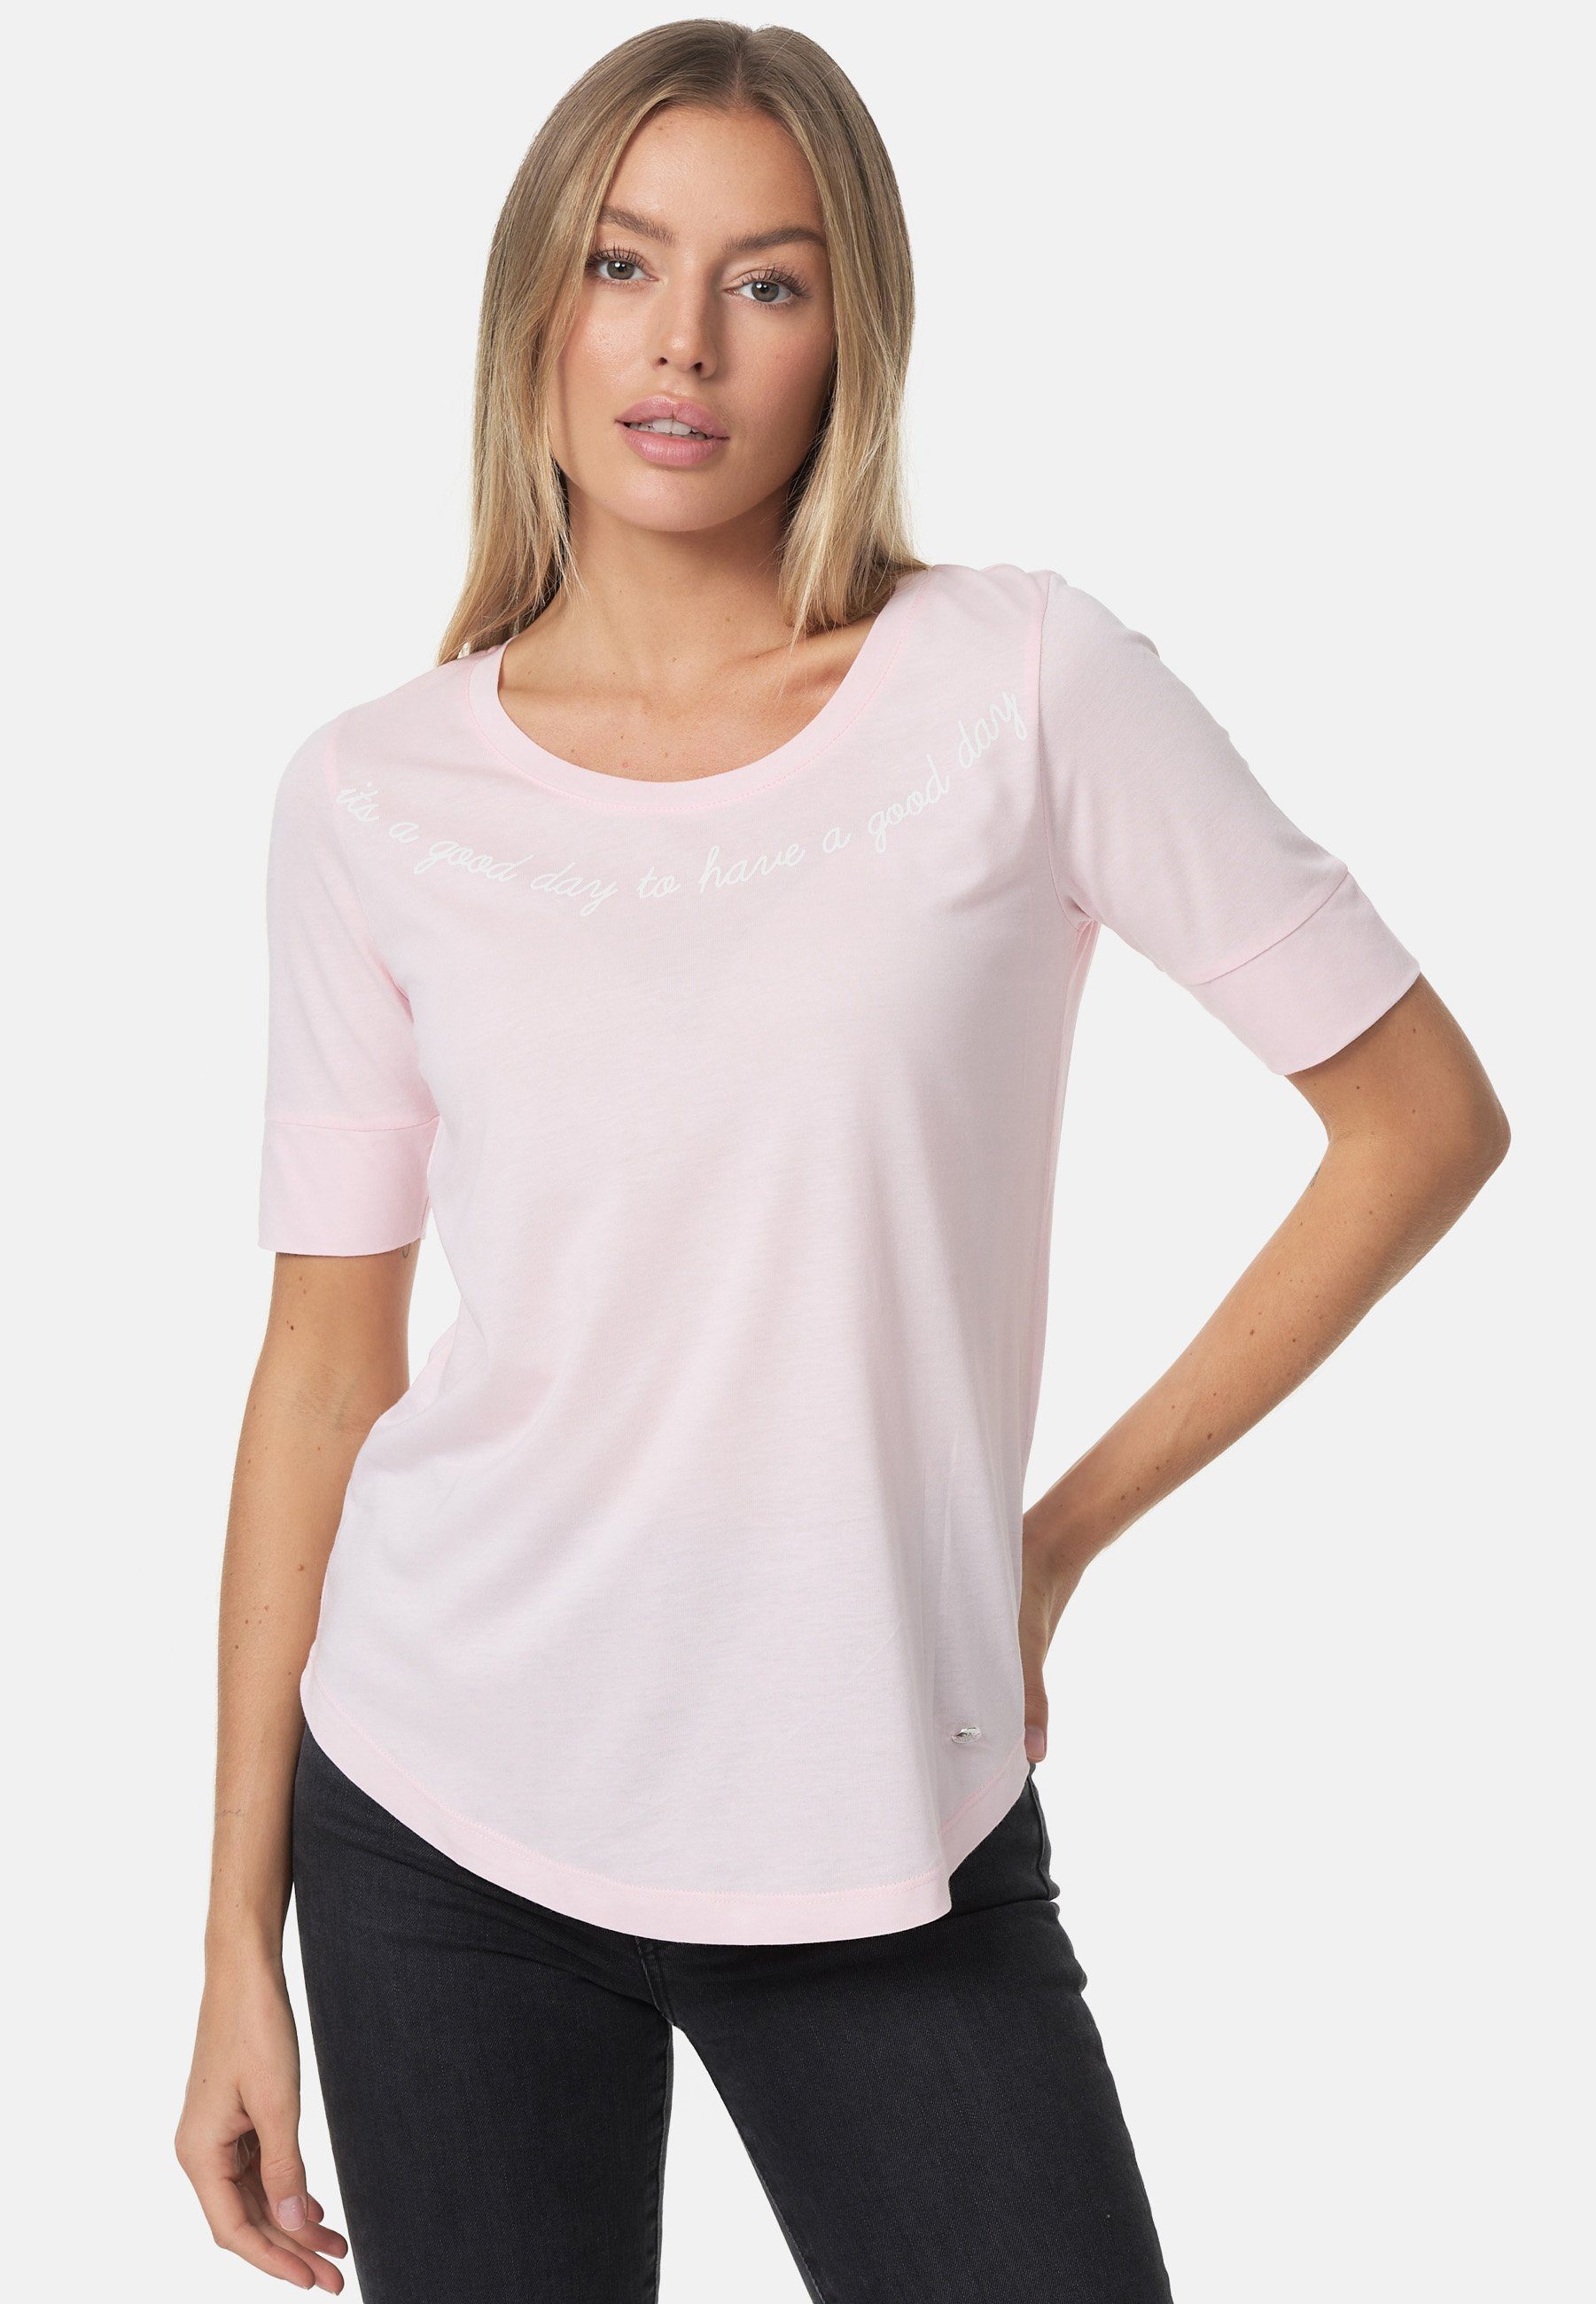 rosa-weiß mit Print stylischem Decay T-Shirt